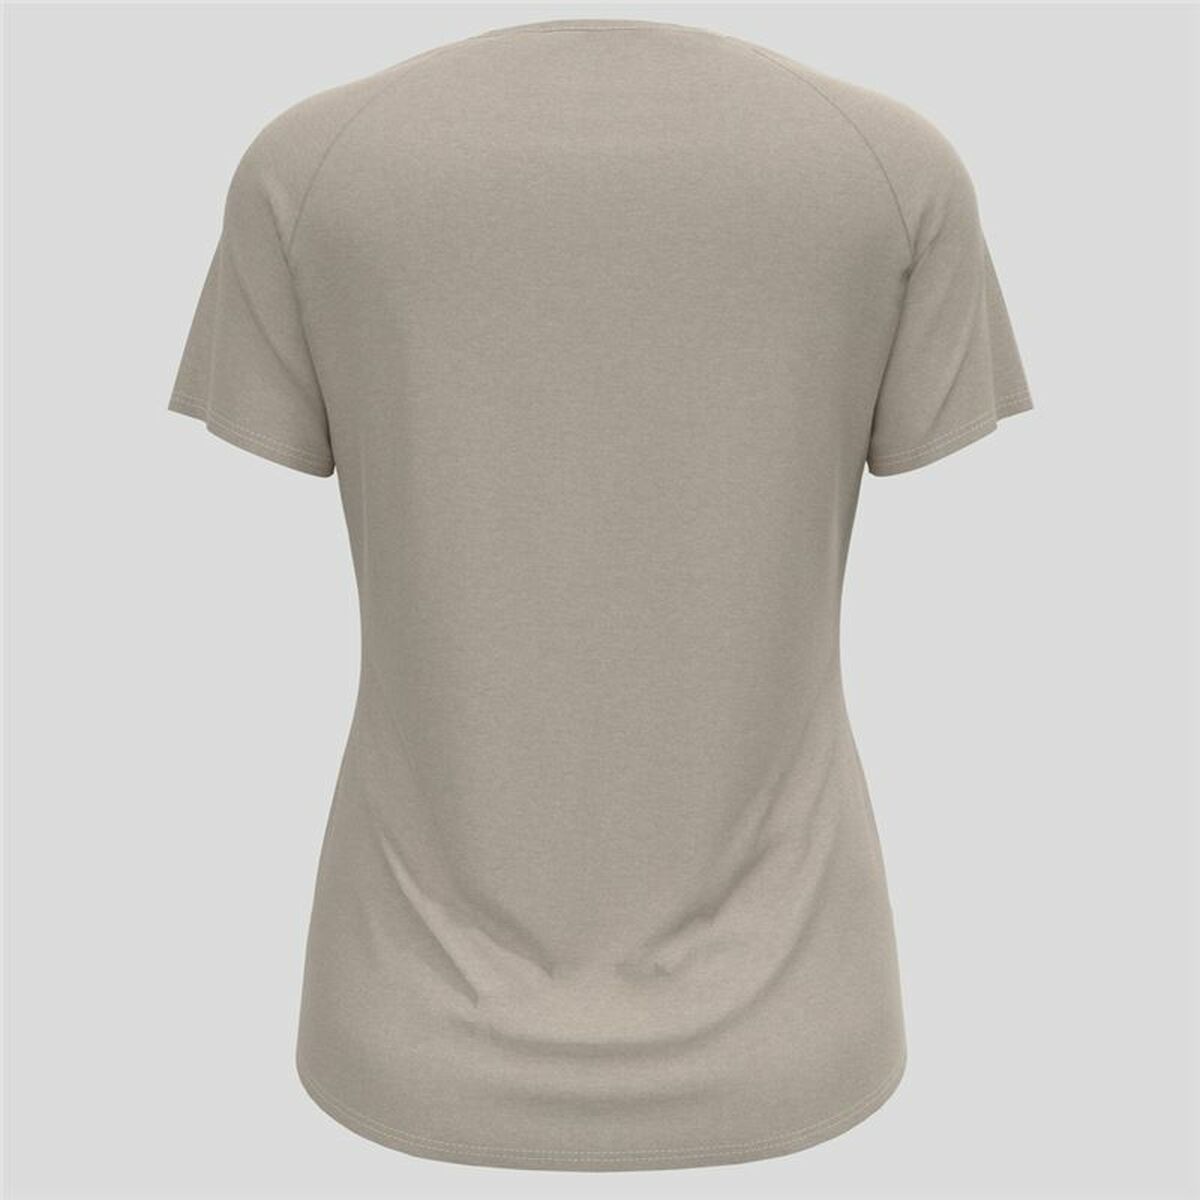 Kaufe Damen Kurzarm-T-Shirt Odlo Essential 365 Grau bei AWK Flagship um € 53.00